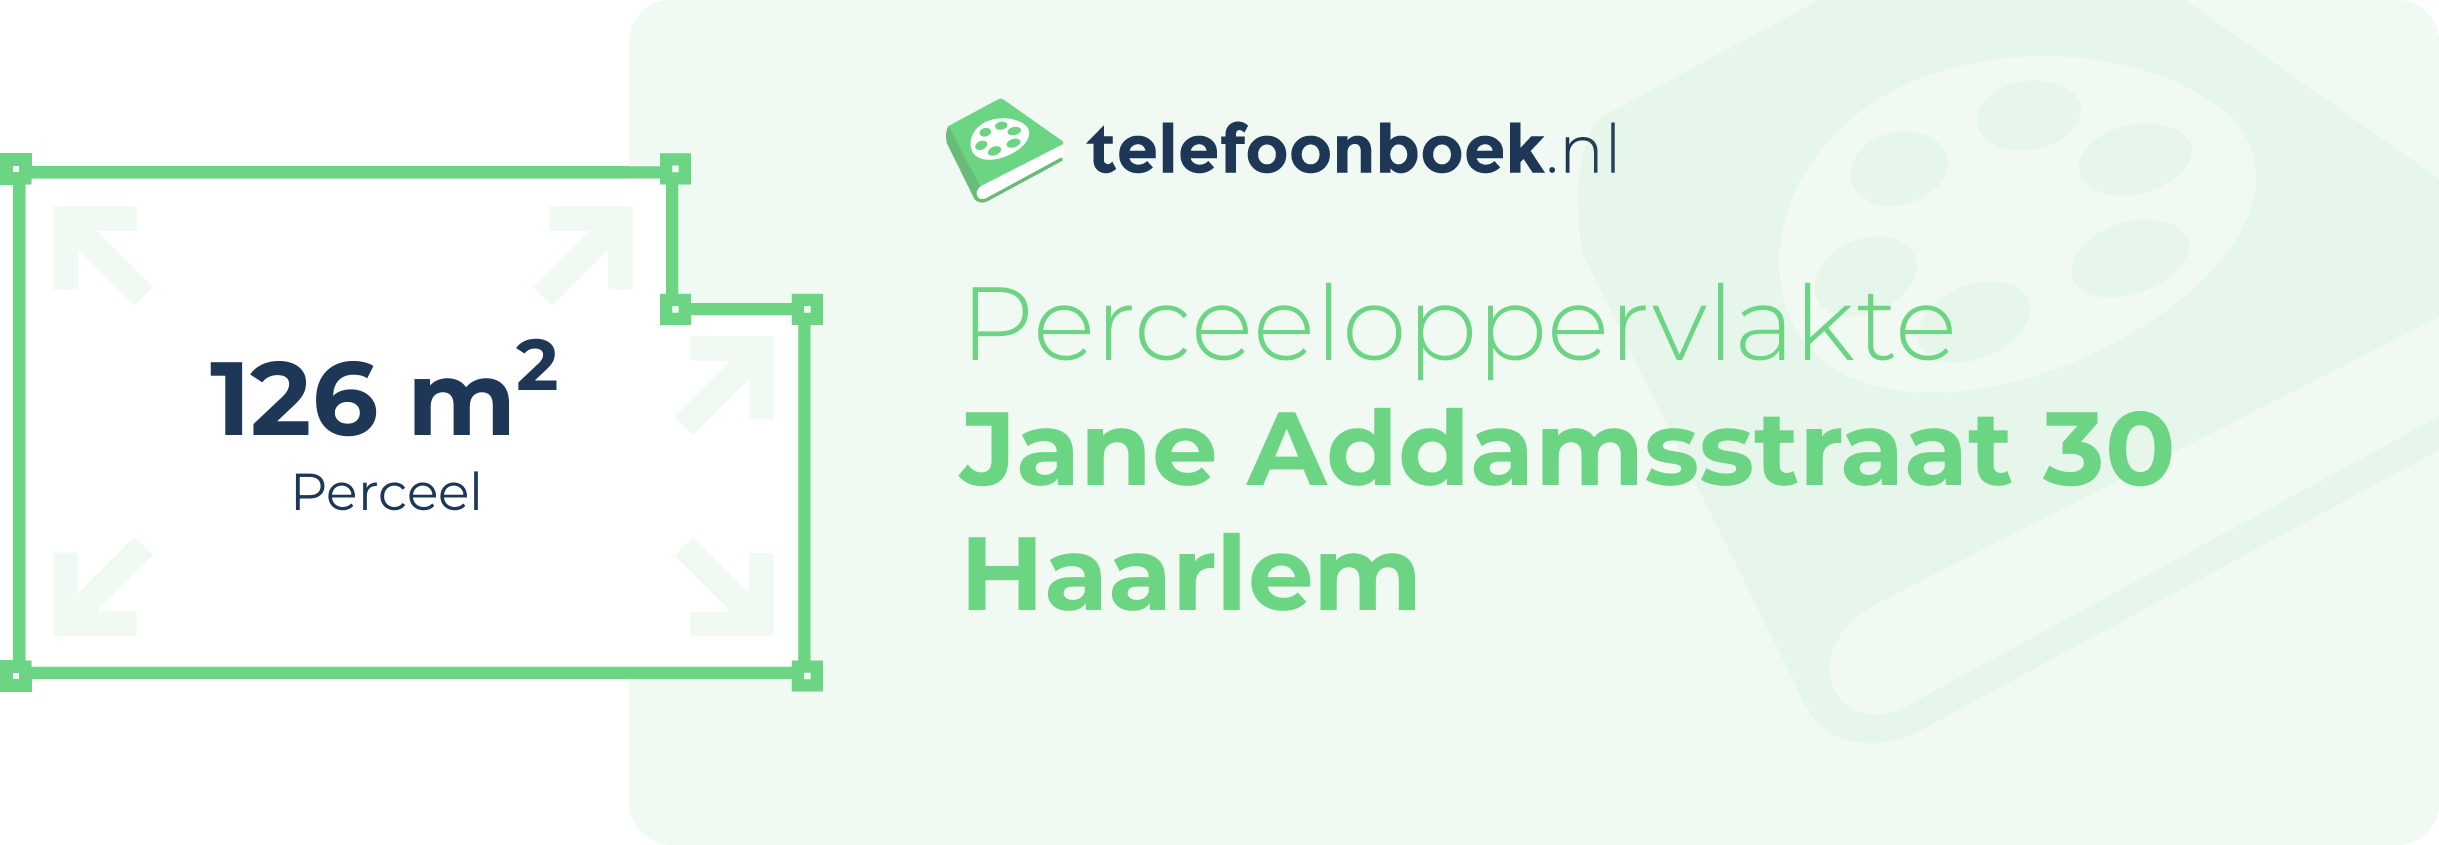 Perceeloppervlakte Jane Addamsstraat 30 Haarlem